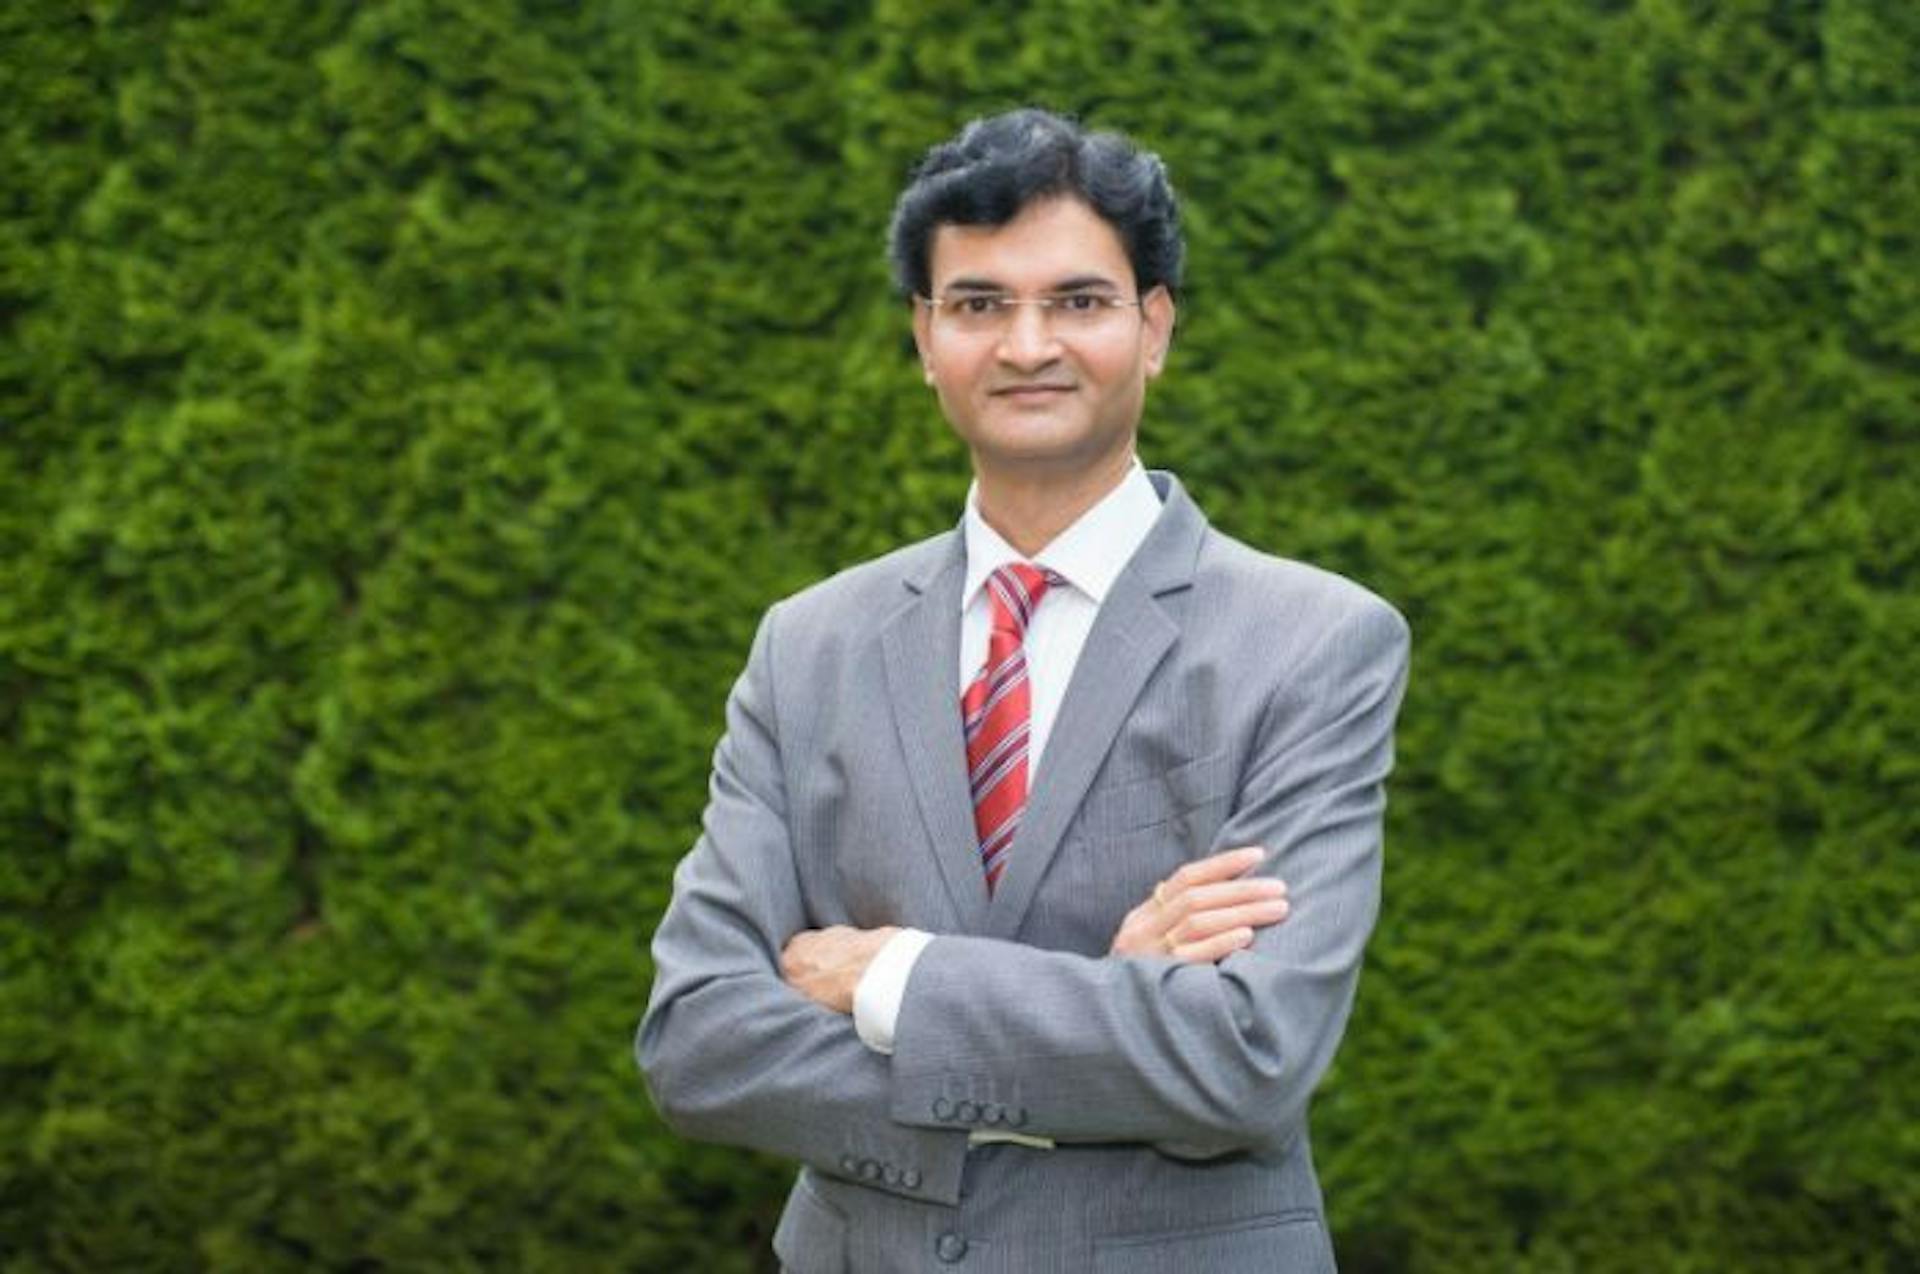 featured image - Làm chủ dữ liệu thời gian thực: Chiến lược xây dựng nền tảng dữ liệu đáng tin cậy của Rahul Chaturvedi